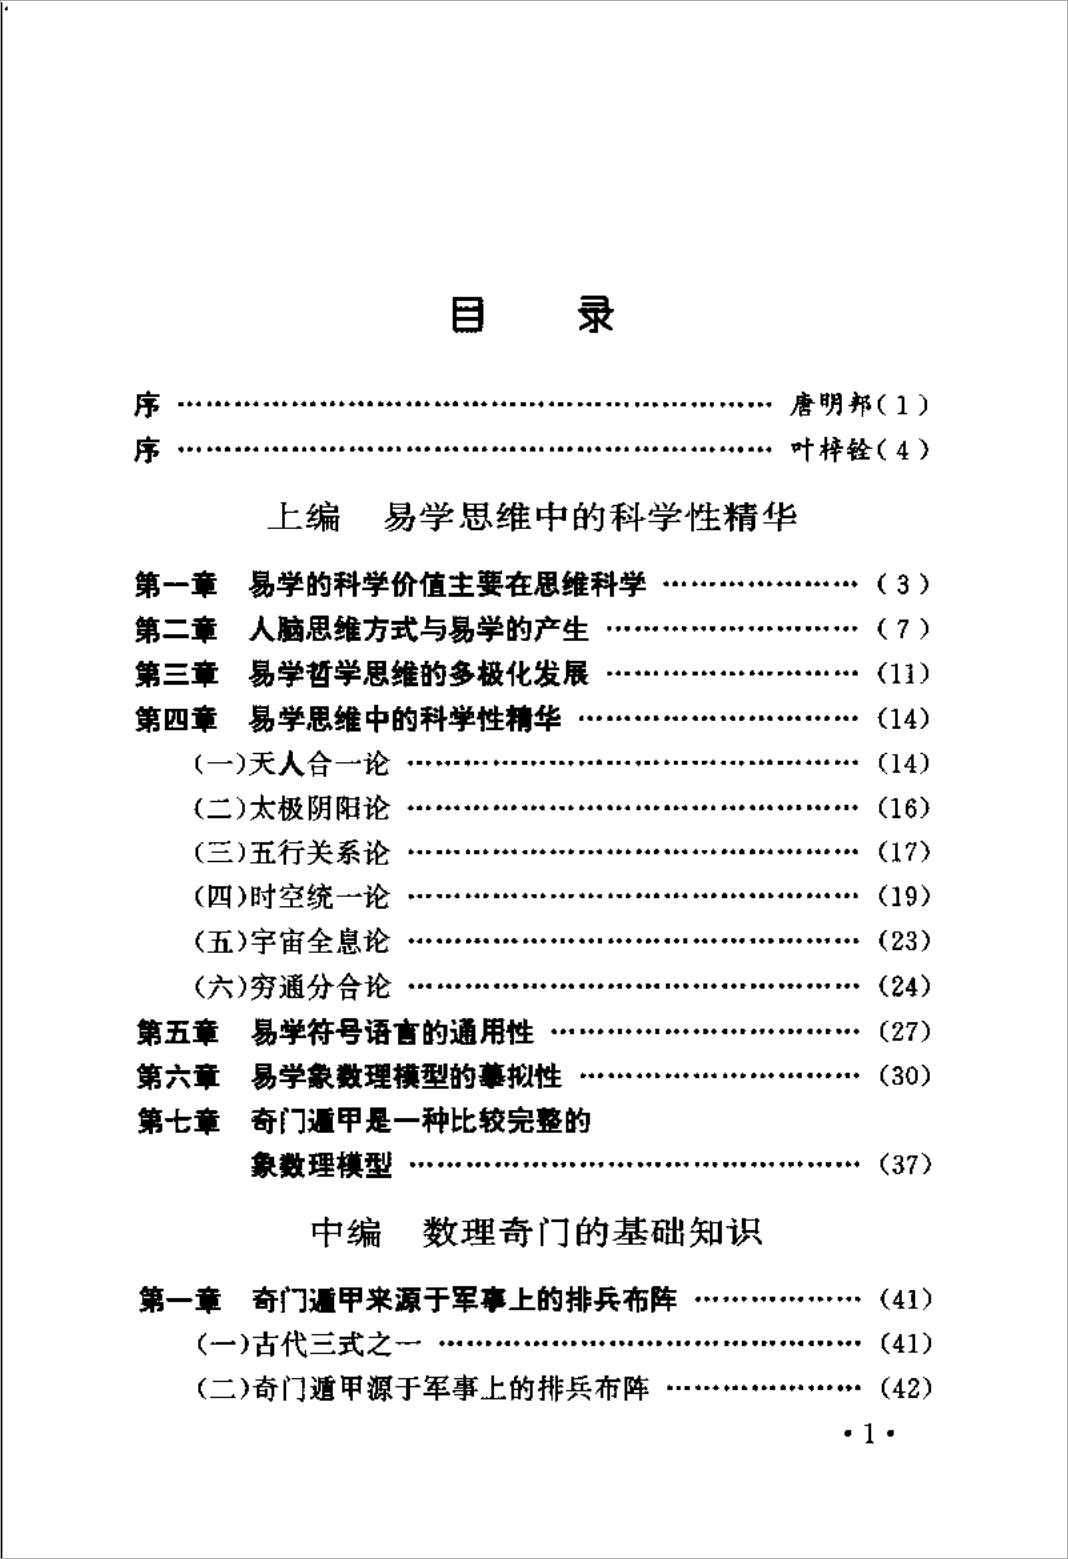 Zhang Zhichun by Qi Men Dun Jia introductory tutorial magic door.pdf